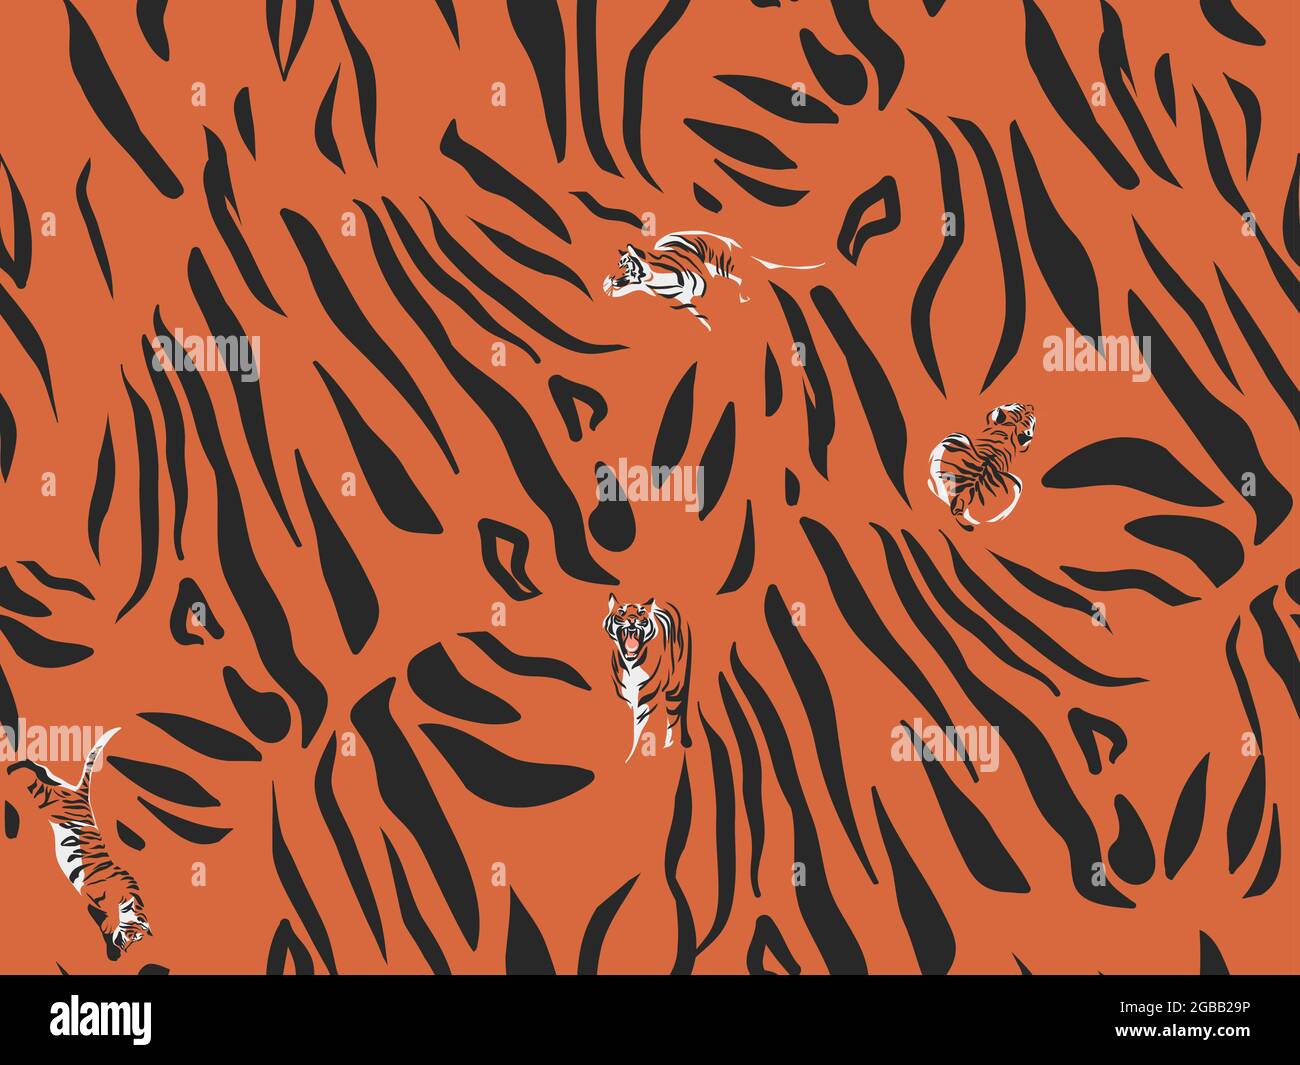 Handgezeichnete Vektor abstrakt Stock moderne Grafik-Illustrationen, Safari böhmischen zeitgenössischen nahtlose Muster drucken mit Tier Tiger gestreiften Textur in Stock Vektor